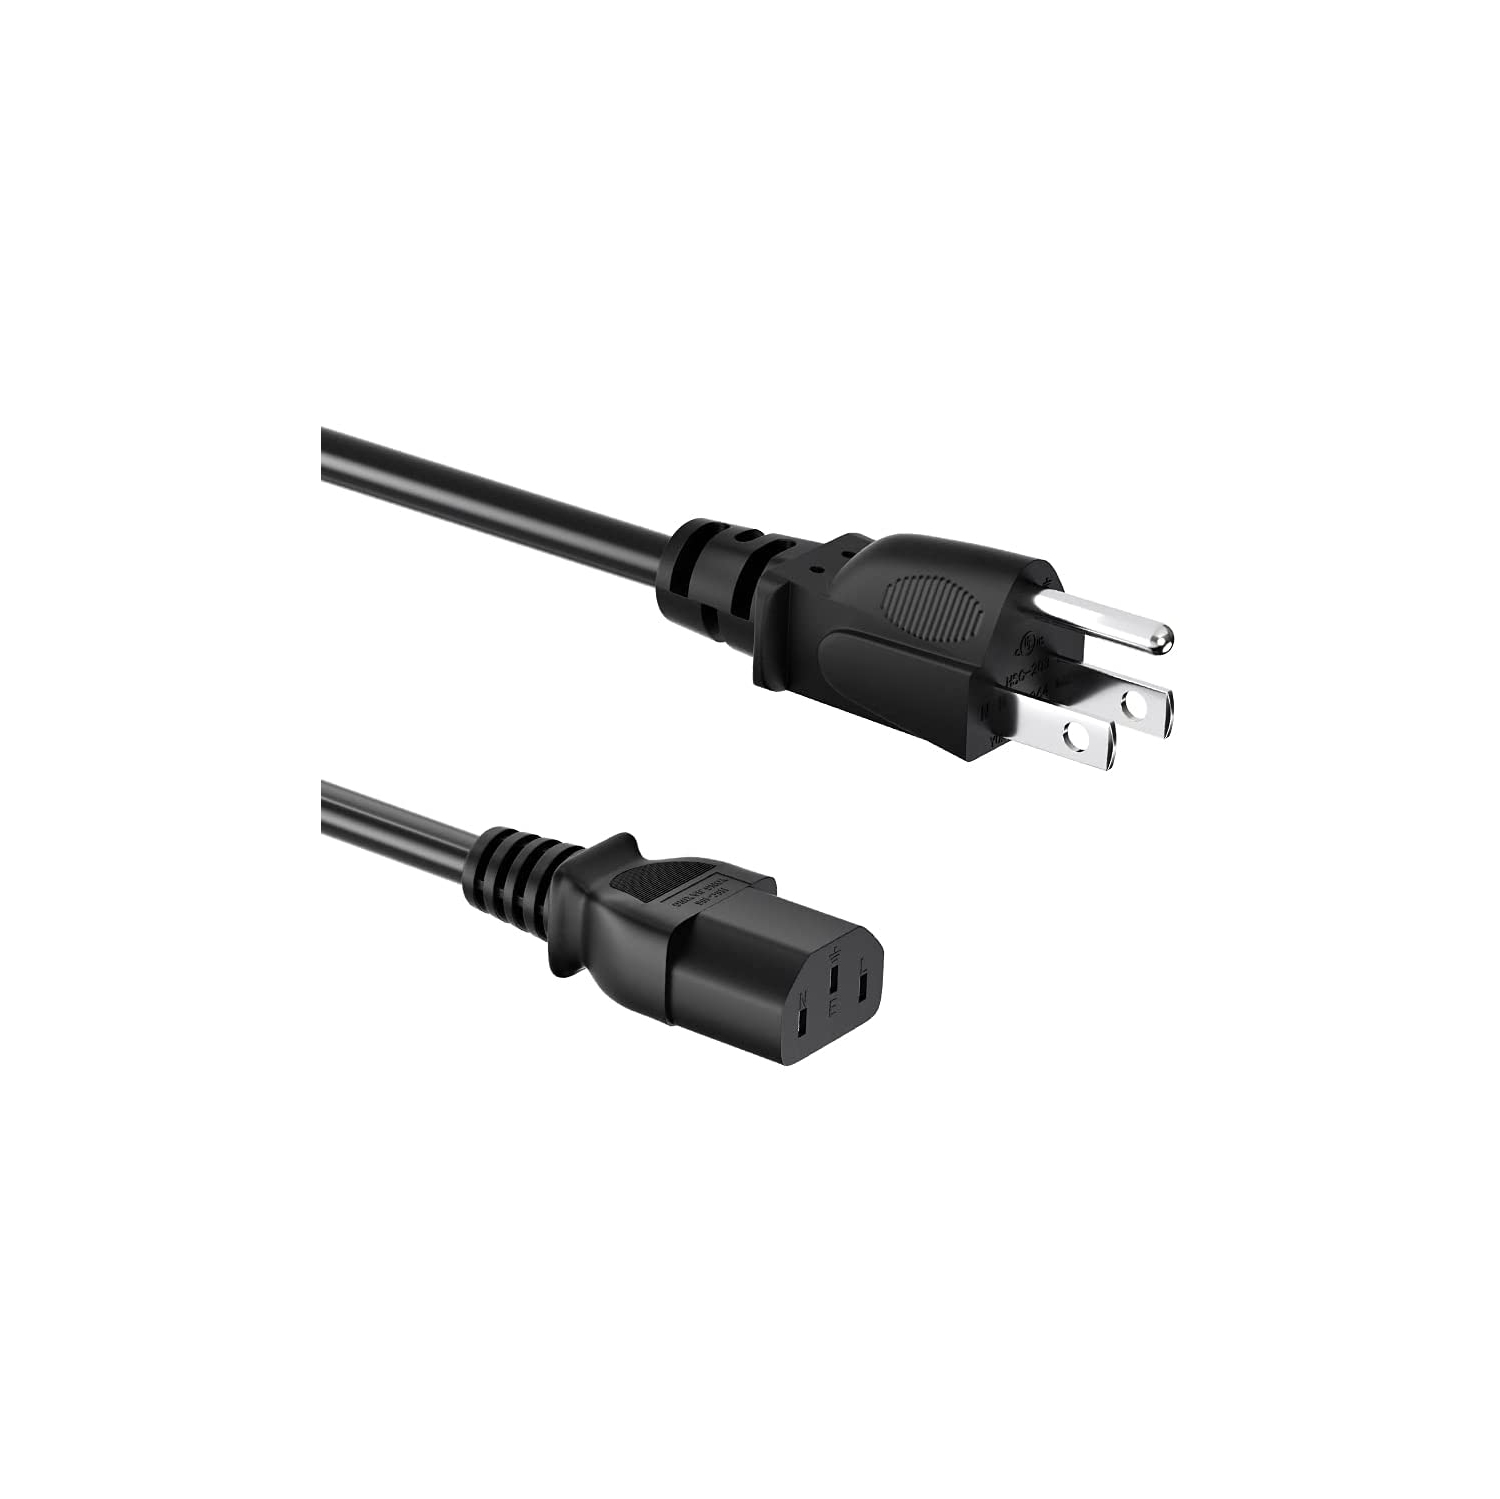 UL Listed 5 Ft/1.5 Meter Computer Power Cord 3 Prong Plug for Samsung TV, Monitor, LG LCD, Printer, Toshiba